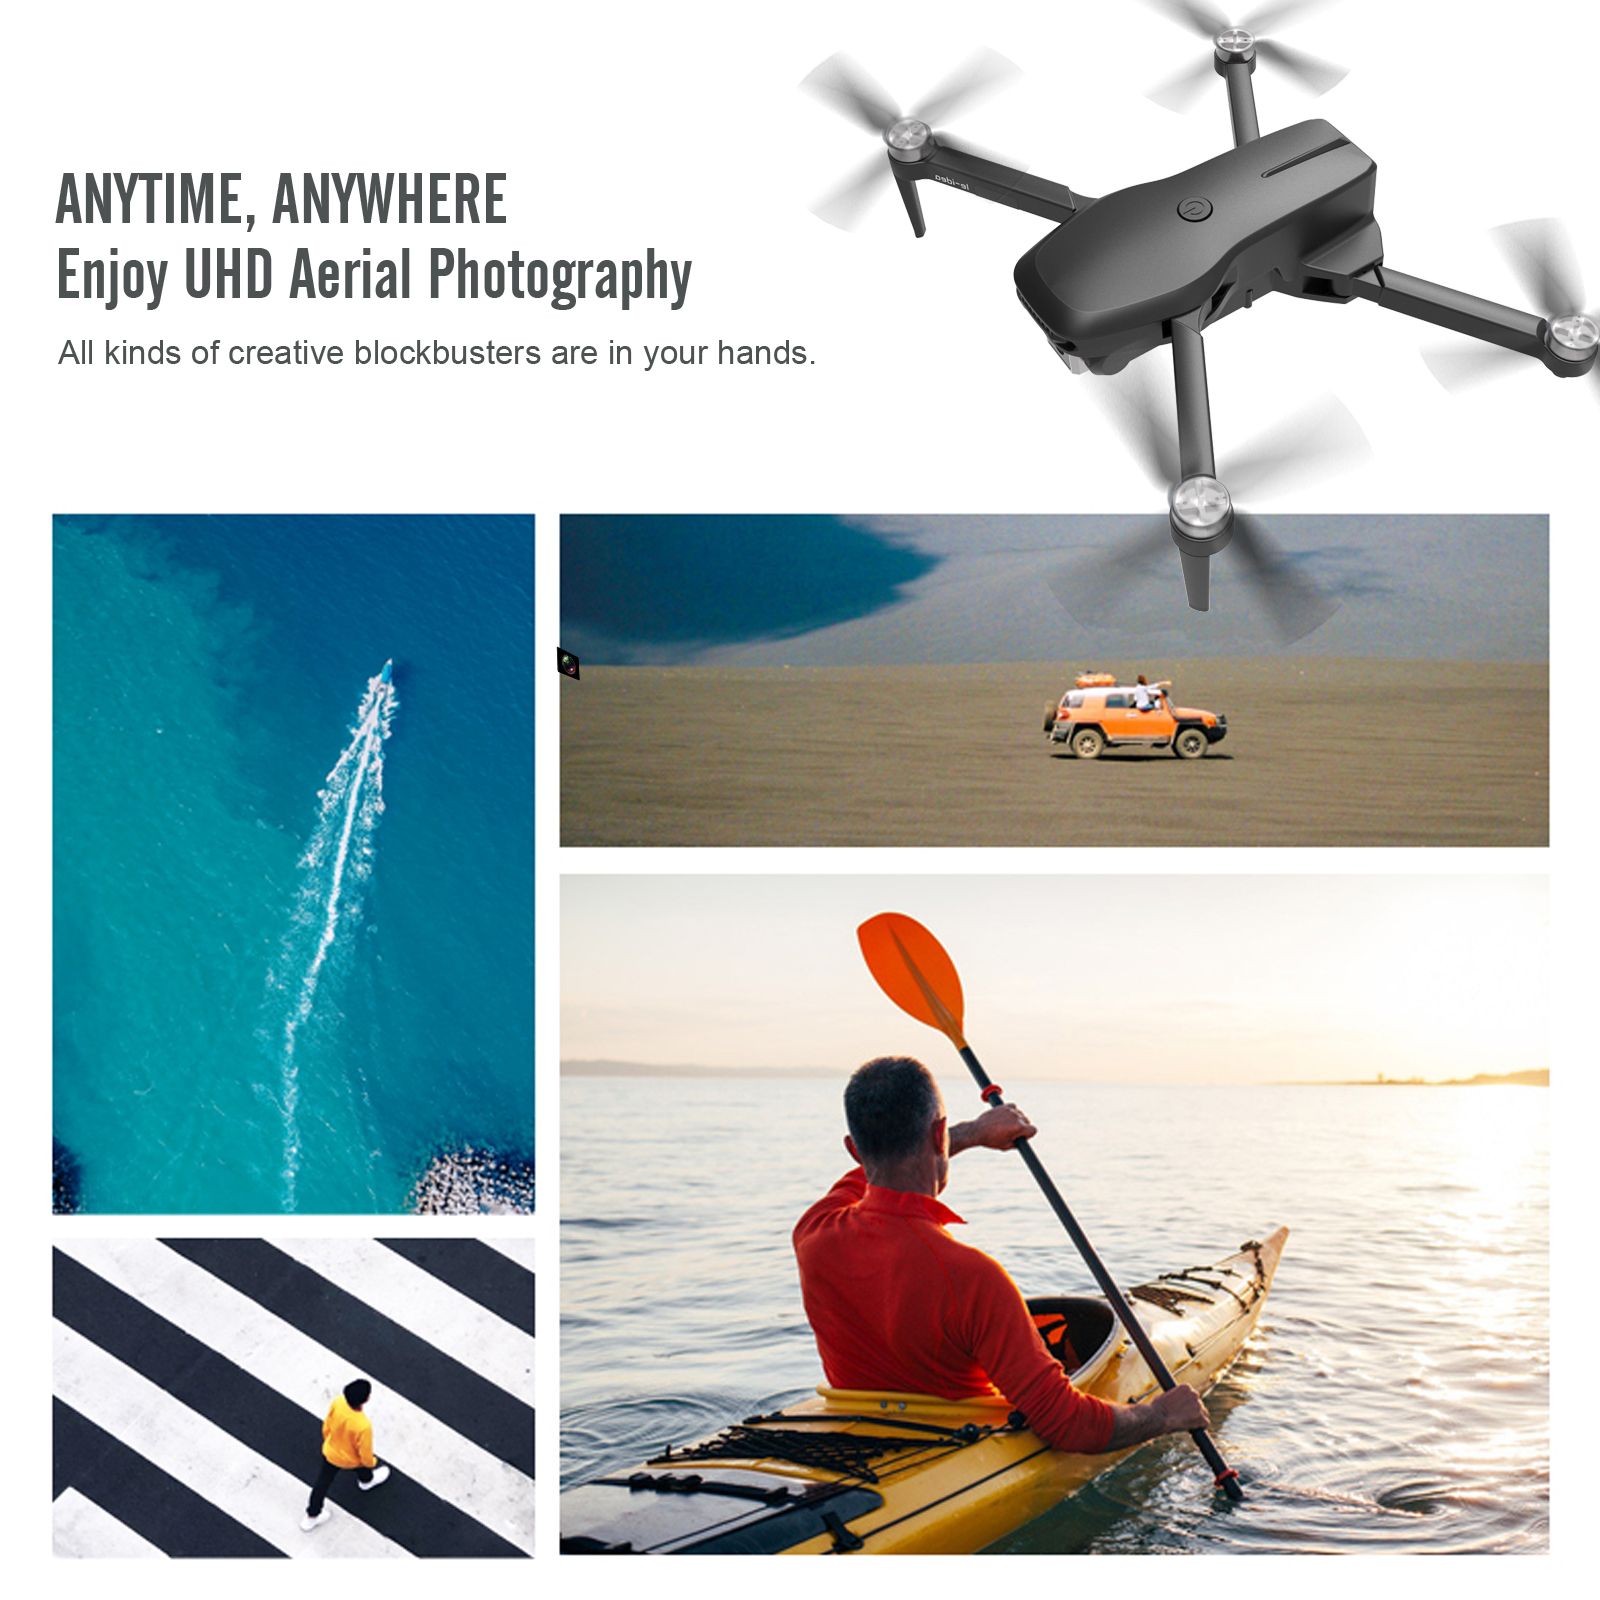 Le-idea-Dron profesional plegable para adultos, con cámara cuadricóptero  UHD 4K, GPS, 5GHz, WiFi, FPV, RC, IDEA31 - AliExpress